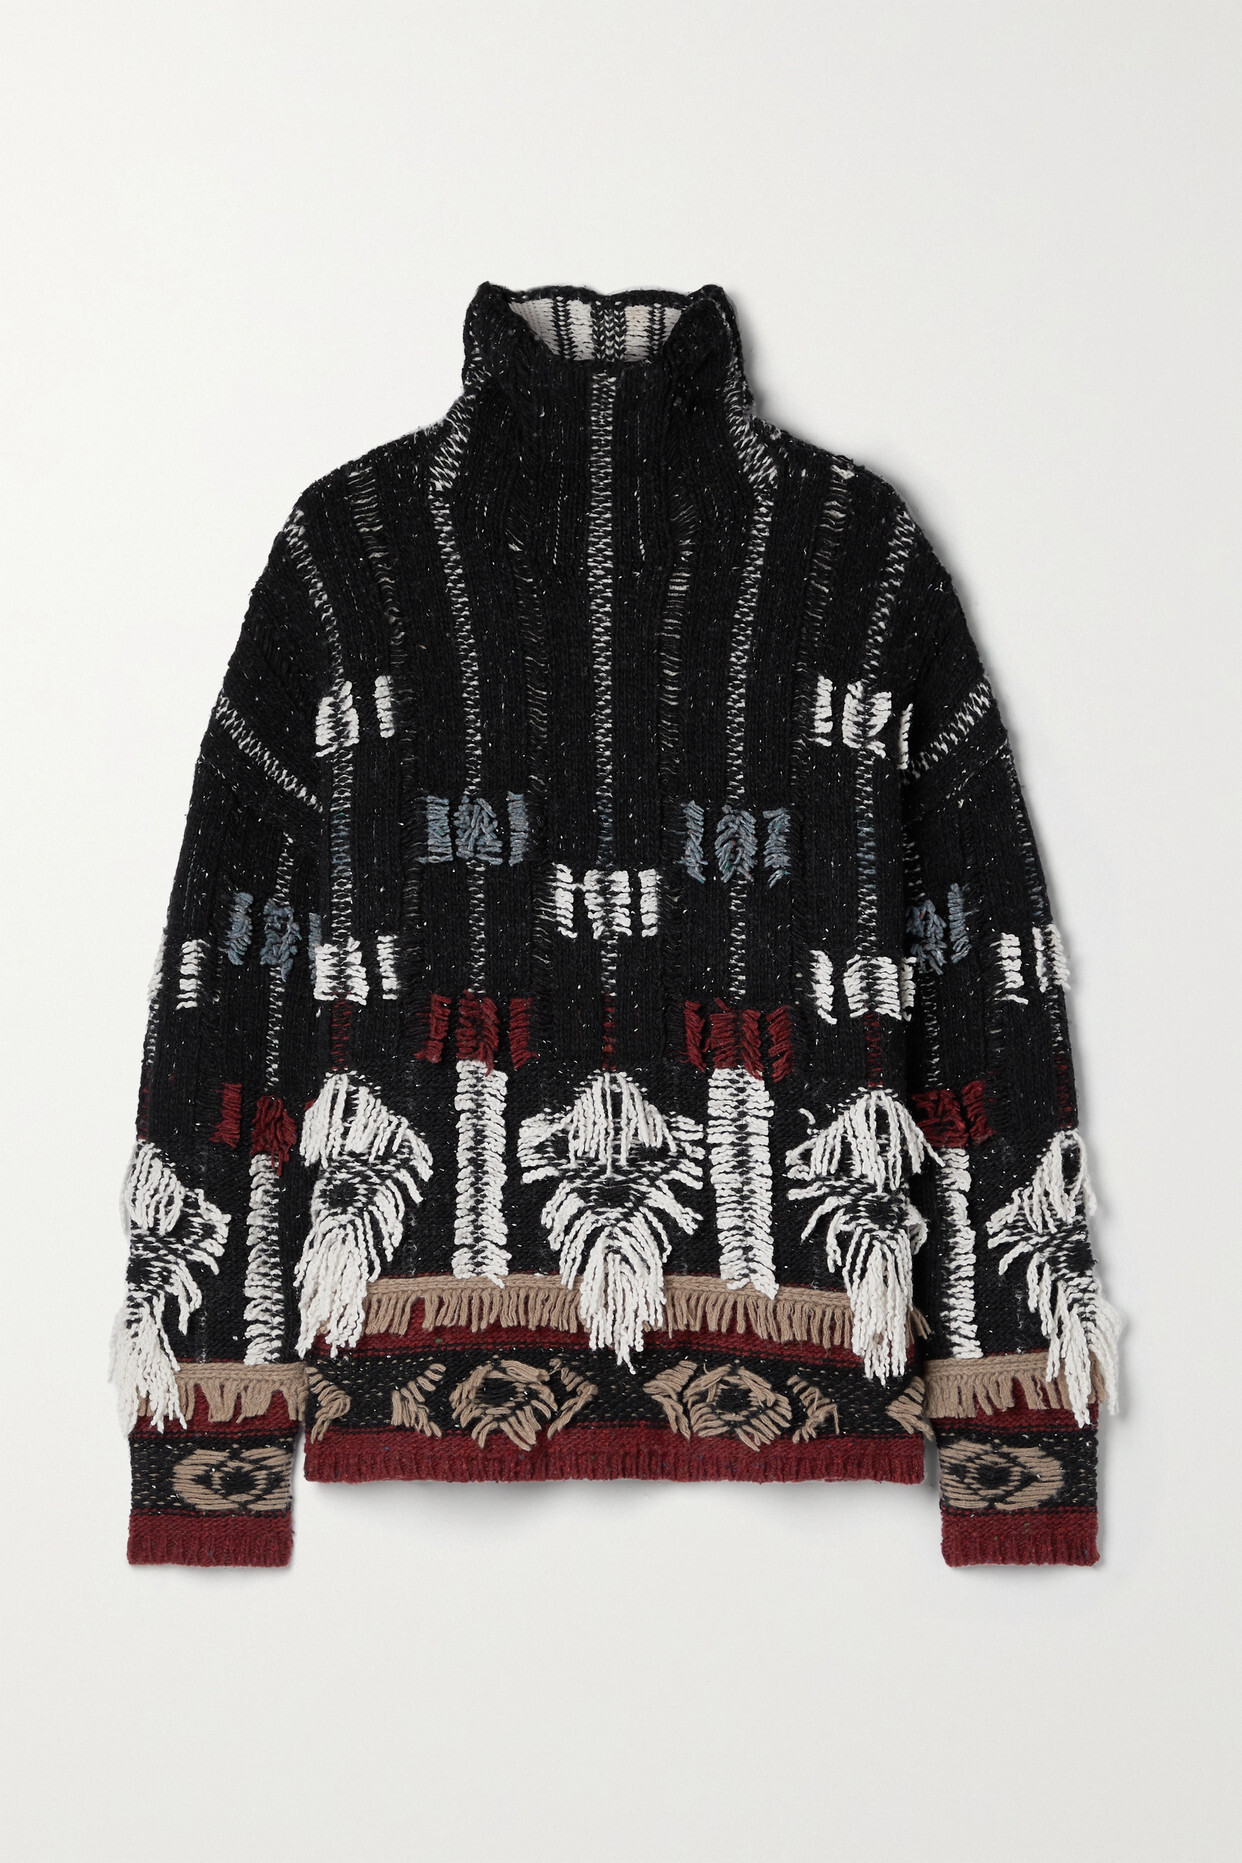 Altuzarra - Nanna Fringed Wool And Cashmere-blend Jacquard Turtleneck Sweater - Black